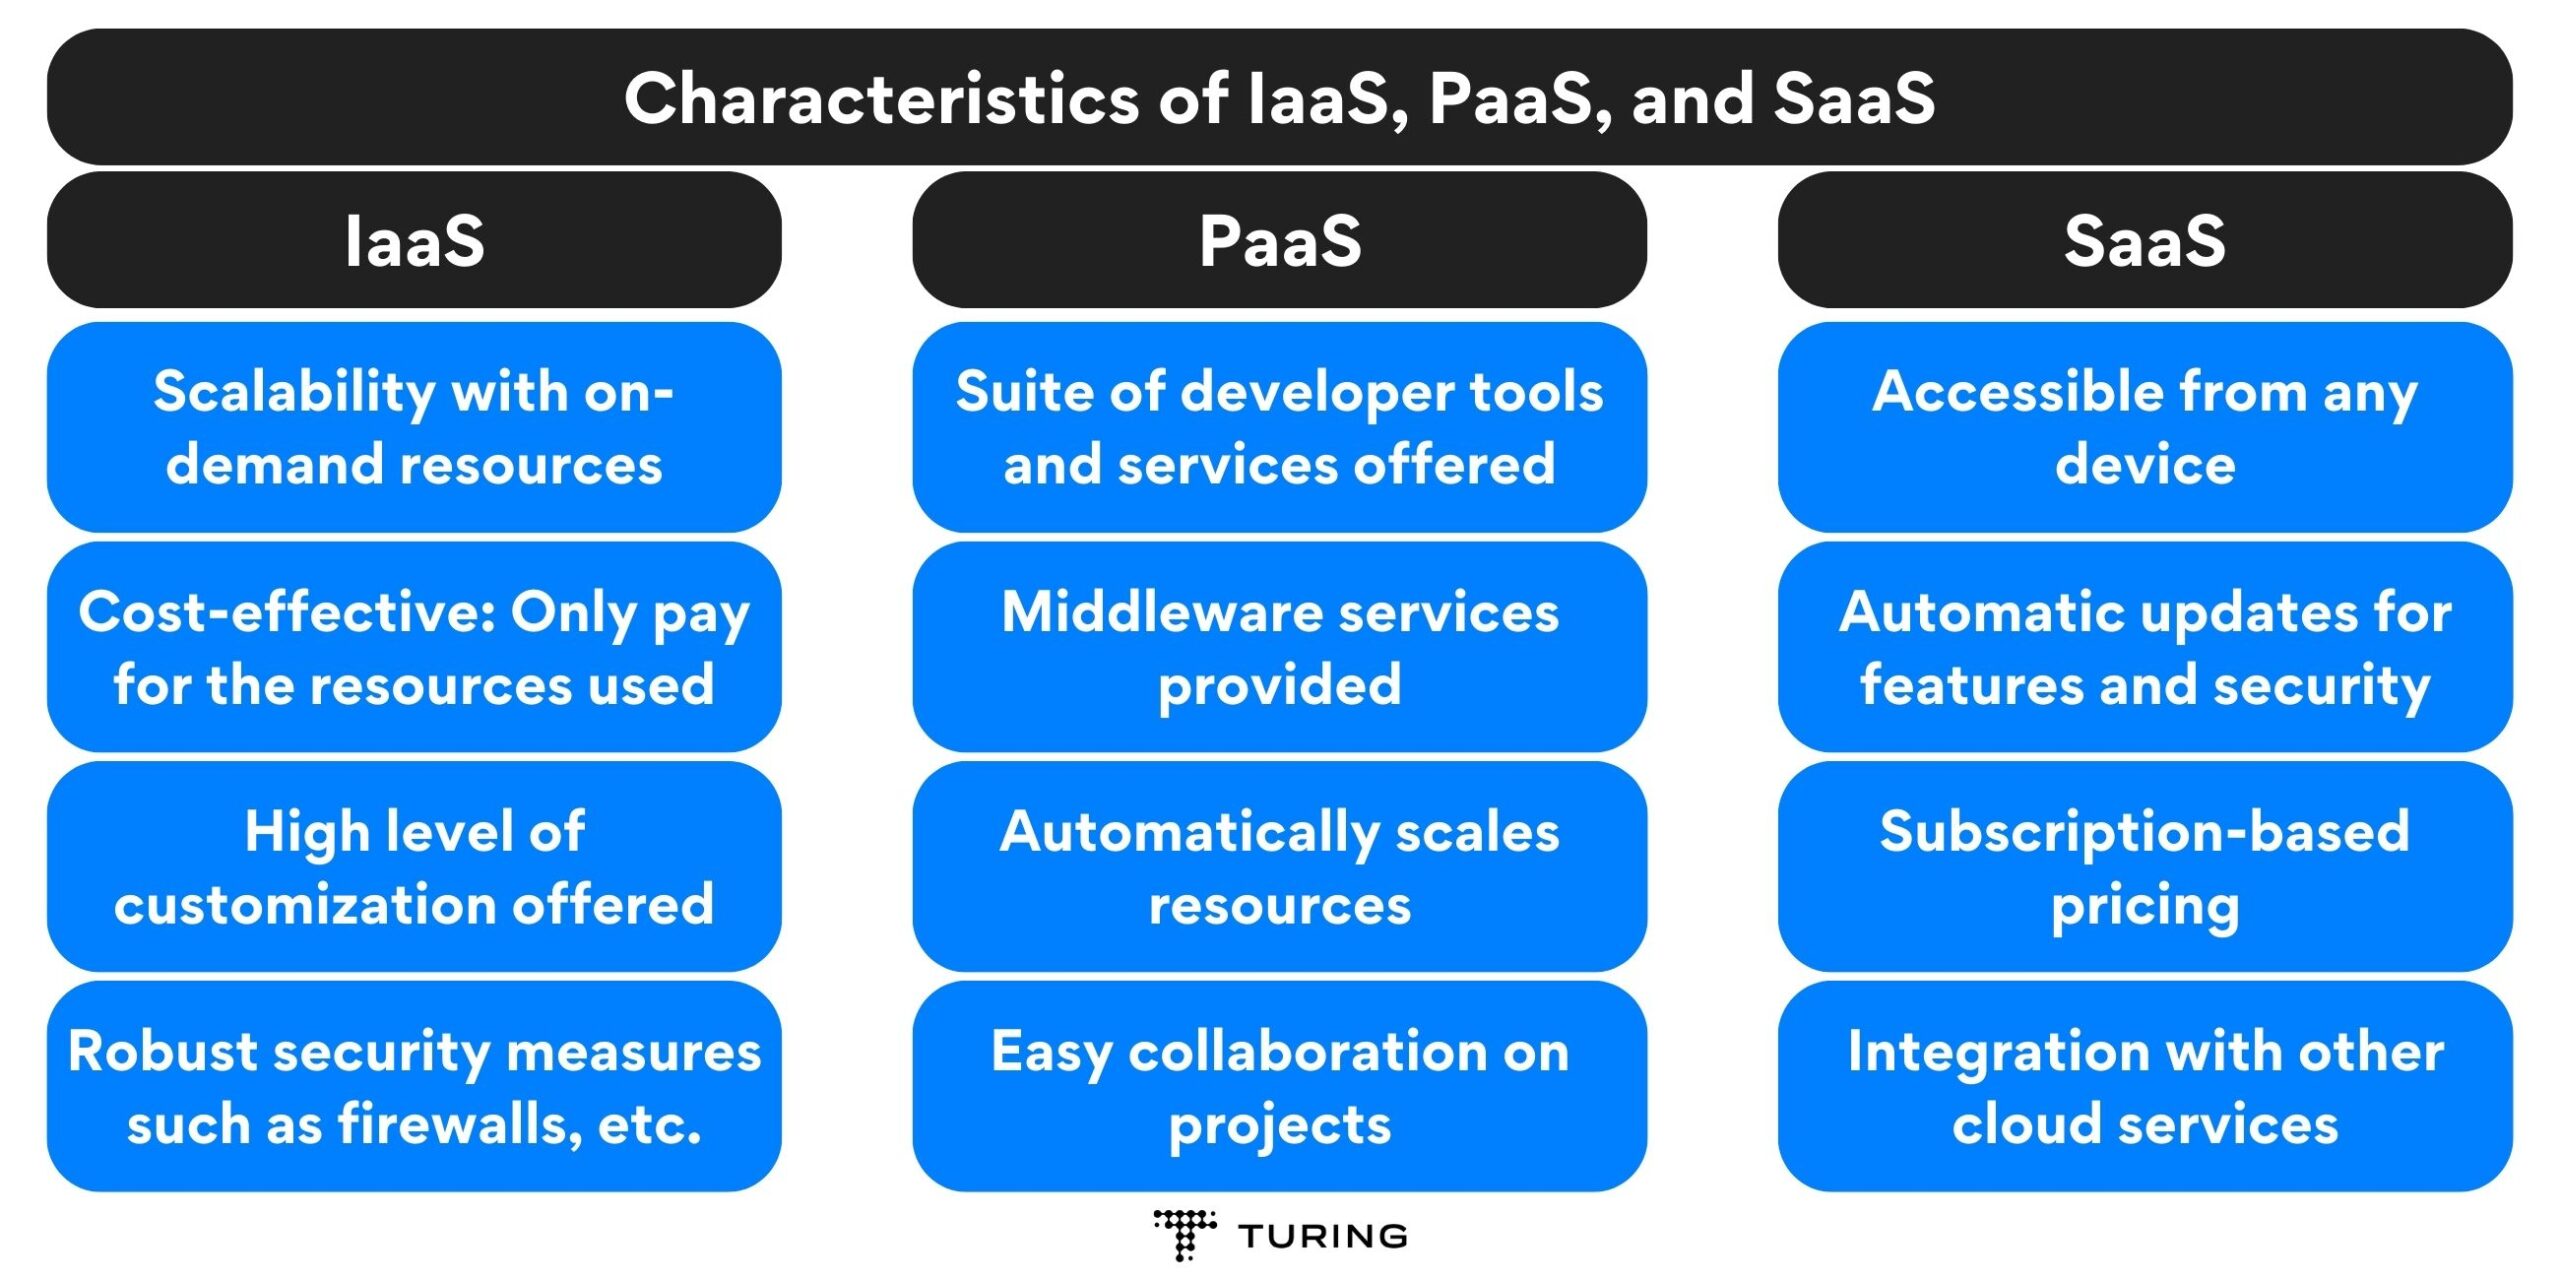 Characteristics of IaaS, PaaS, and SaaS